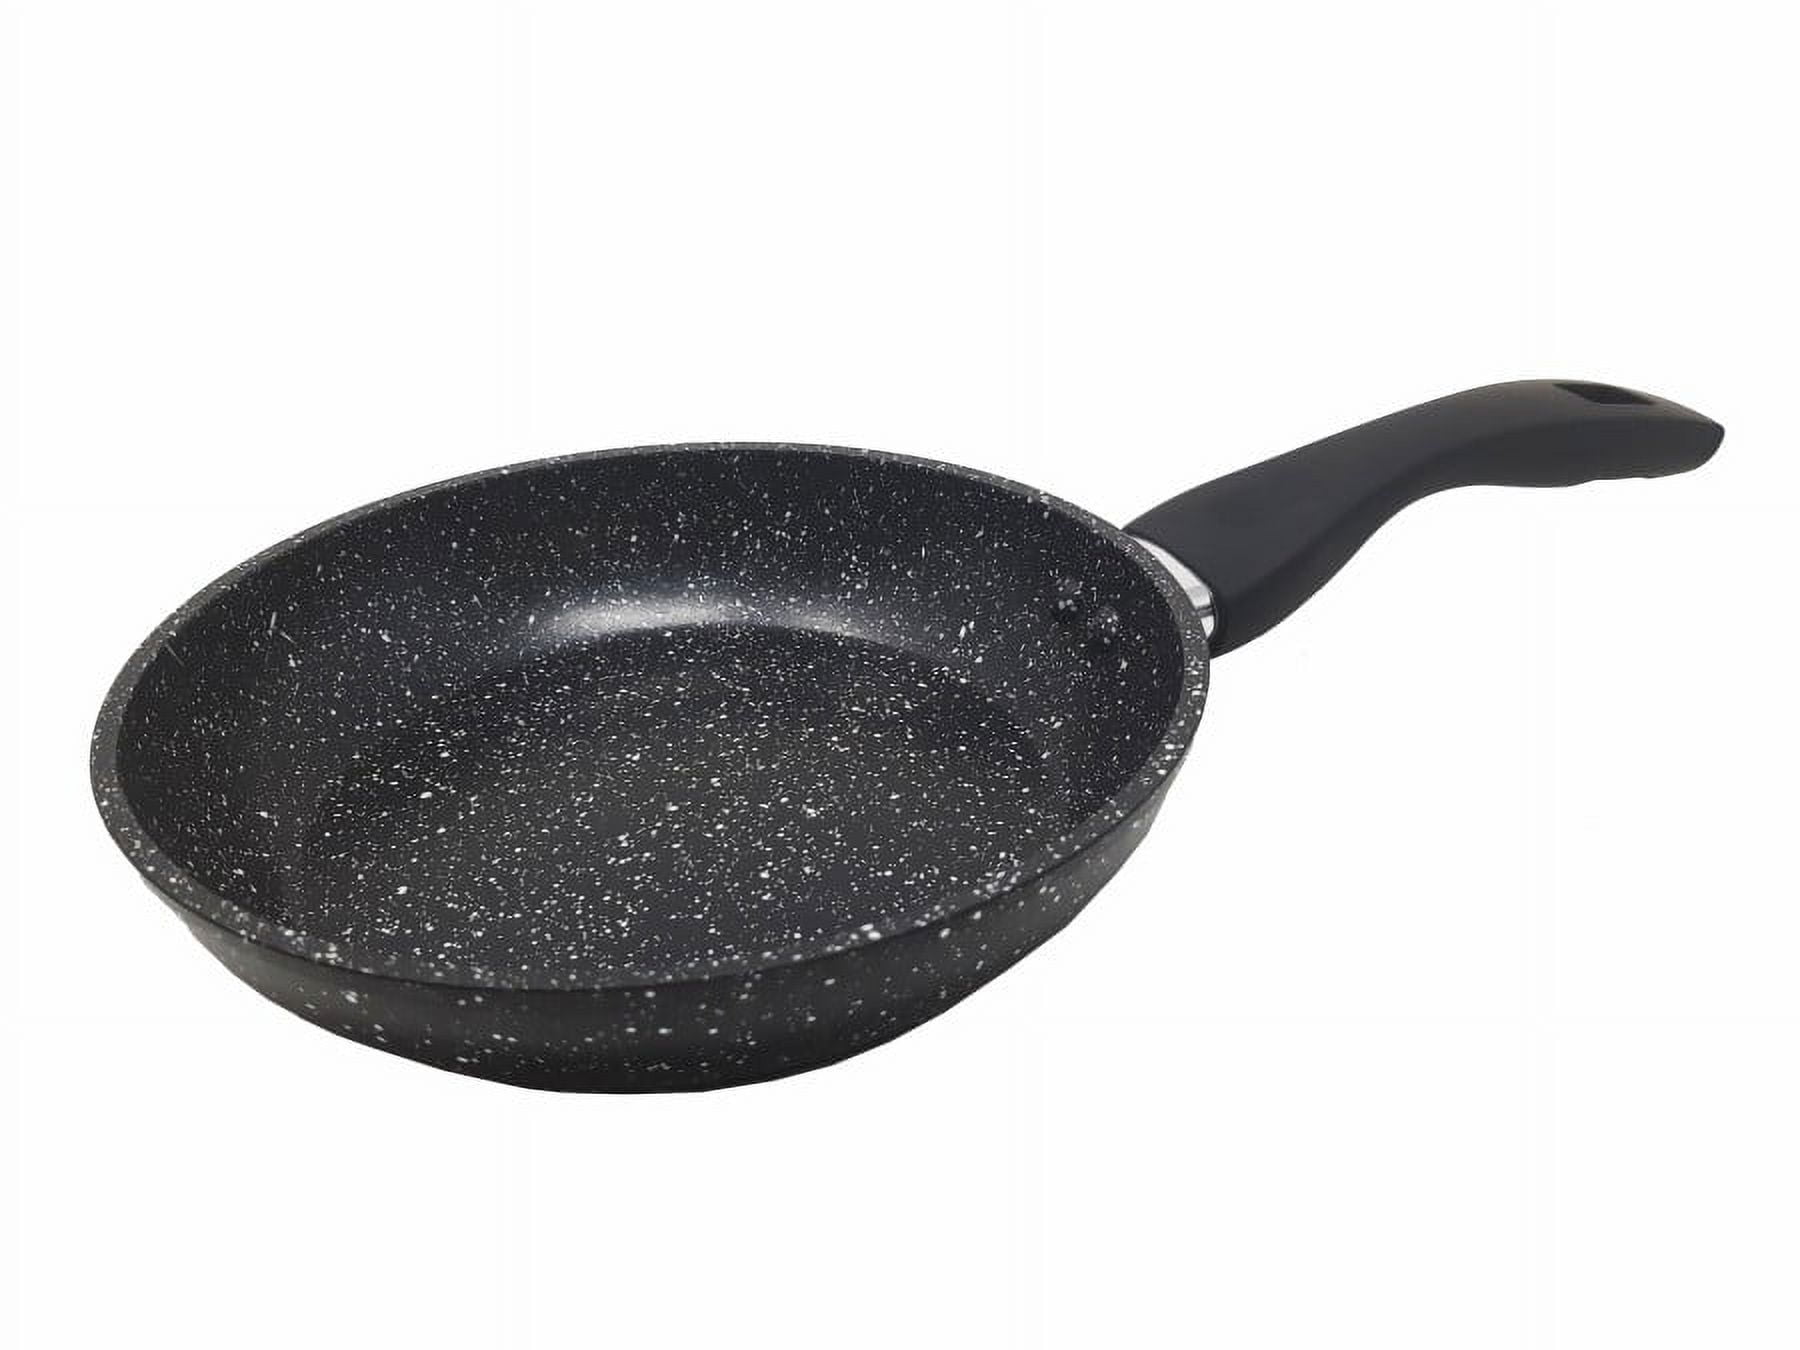 T-FAL G9170764 BLK 12 in. Ceramic Fry Pan, Black